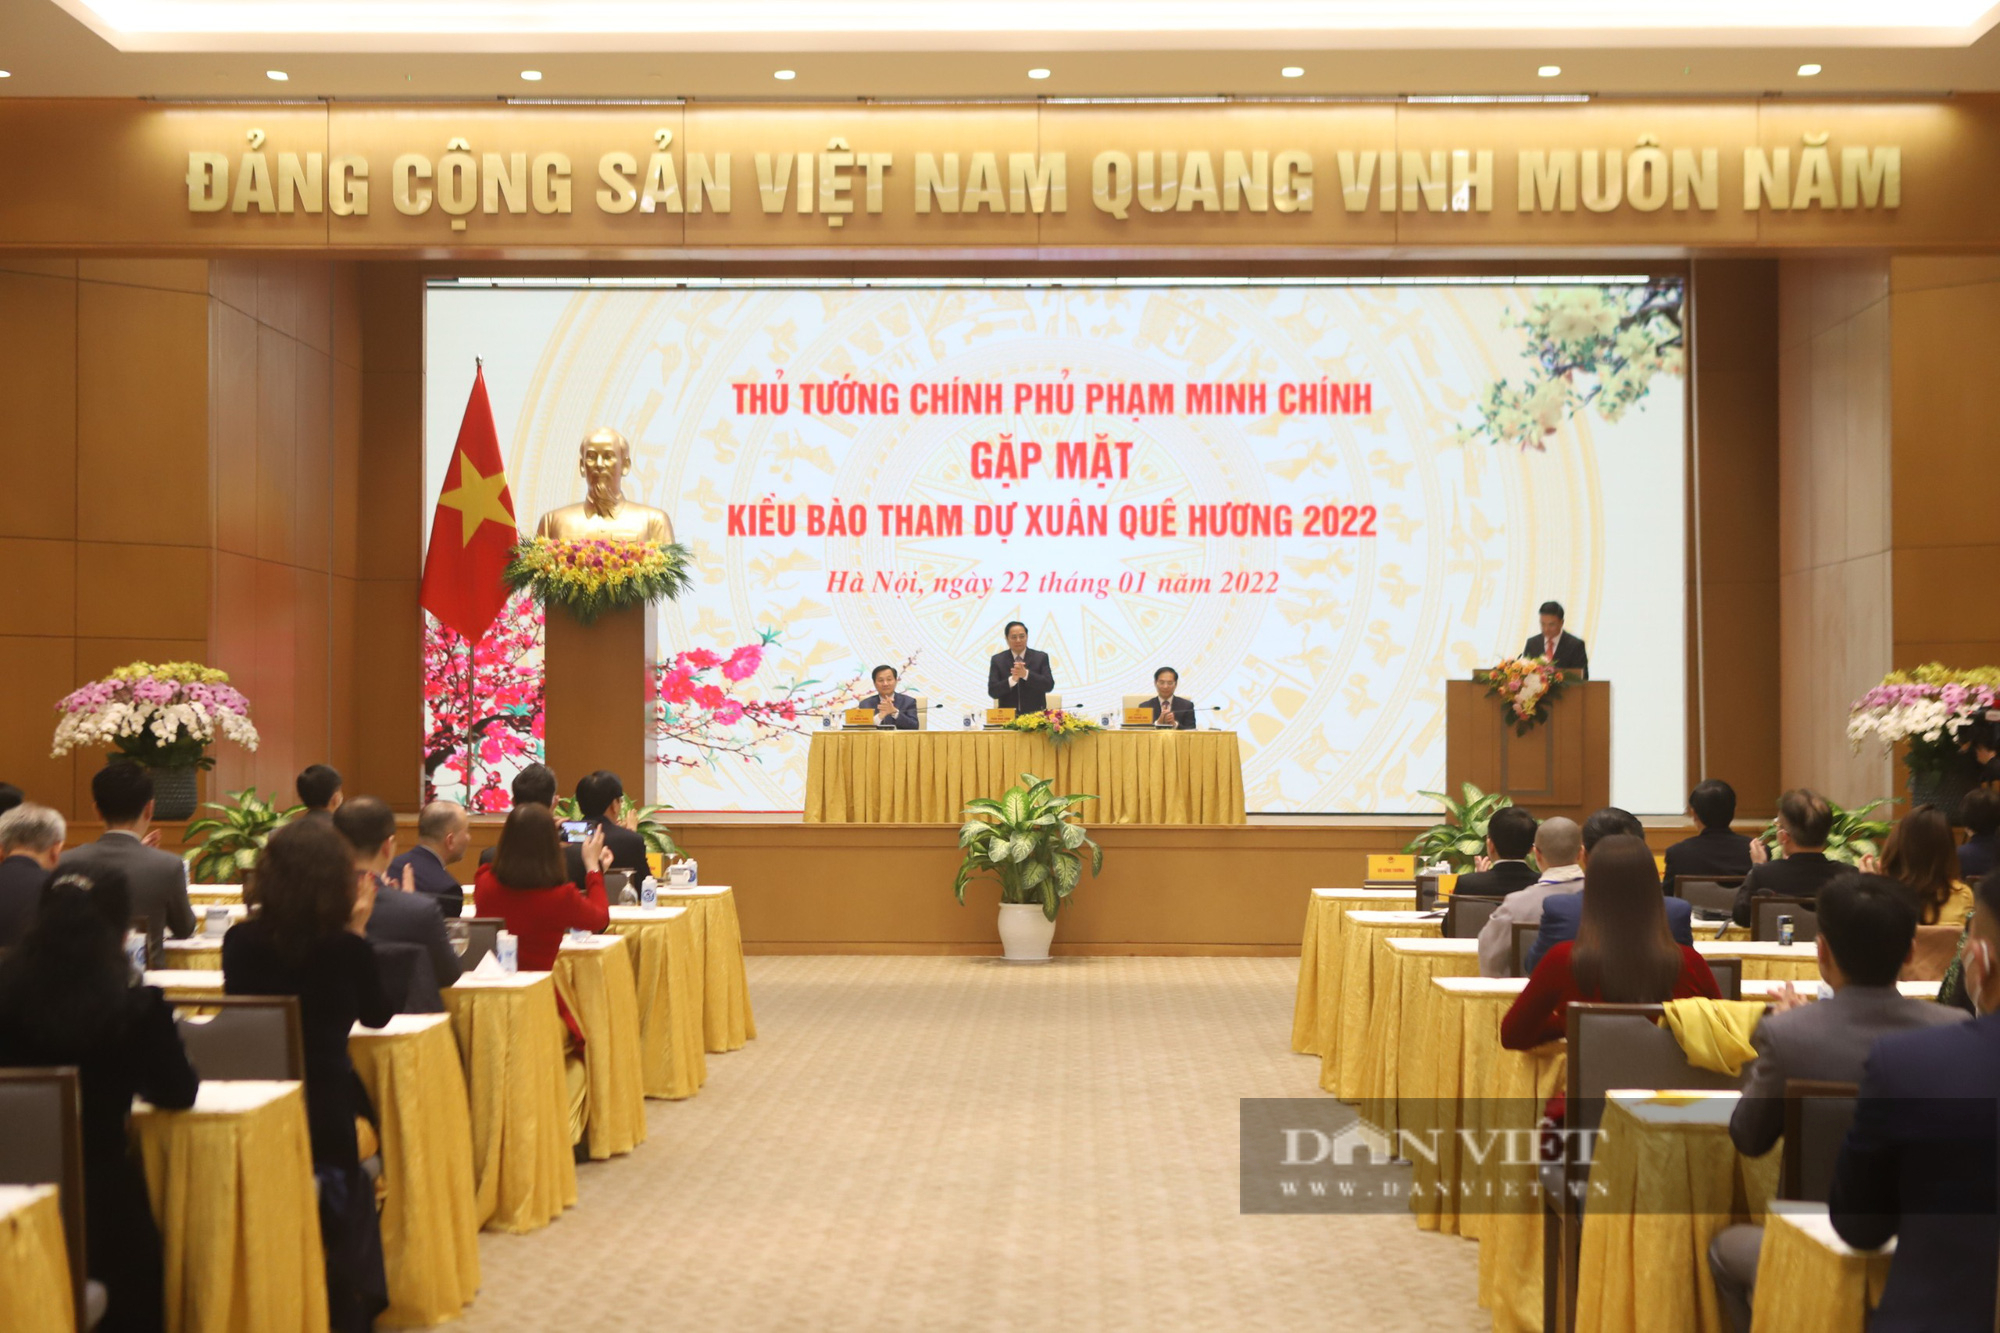 Thủ tướng Phạm Minh Chính gặp mặt kiều bào dự Xuân quê hương 2022 - Ảnh 2.